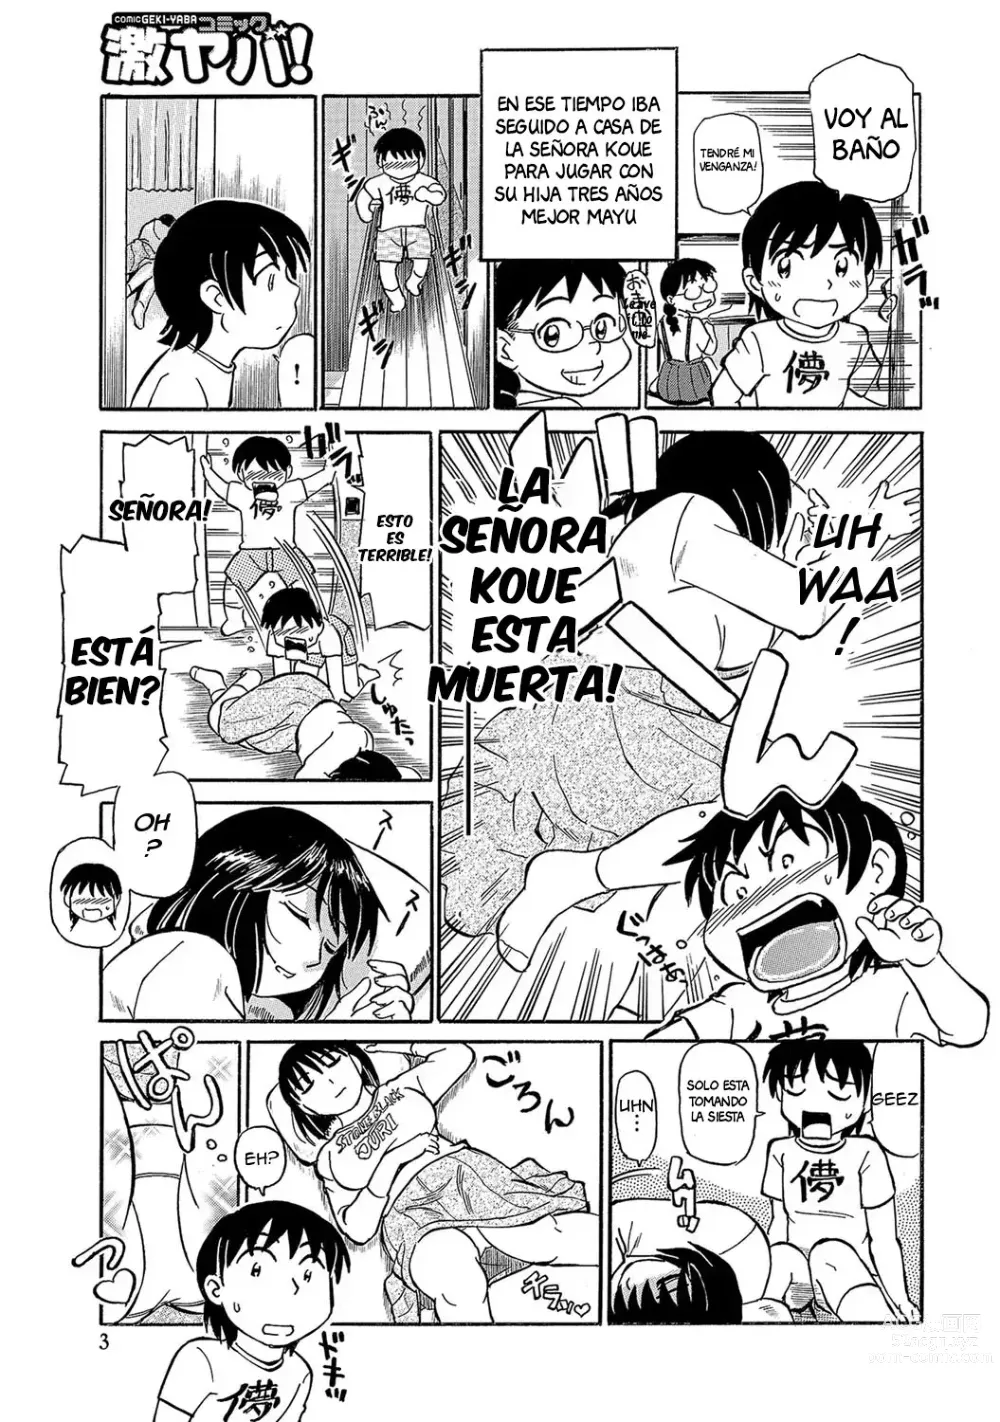 Page 3 of manga Inside Koue's Panties